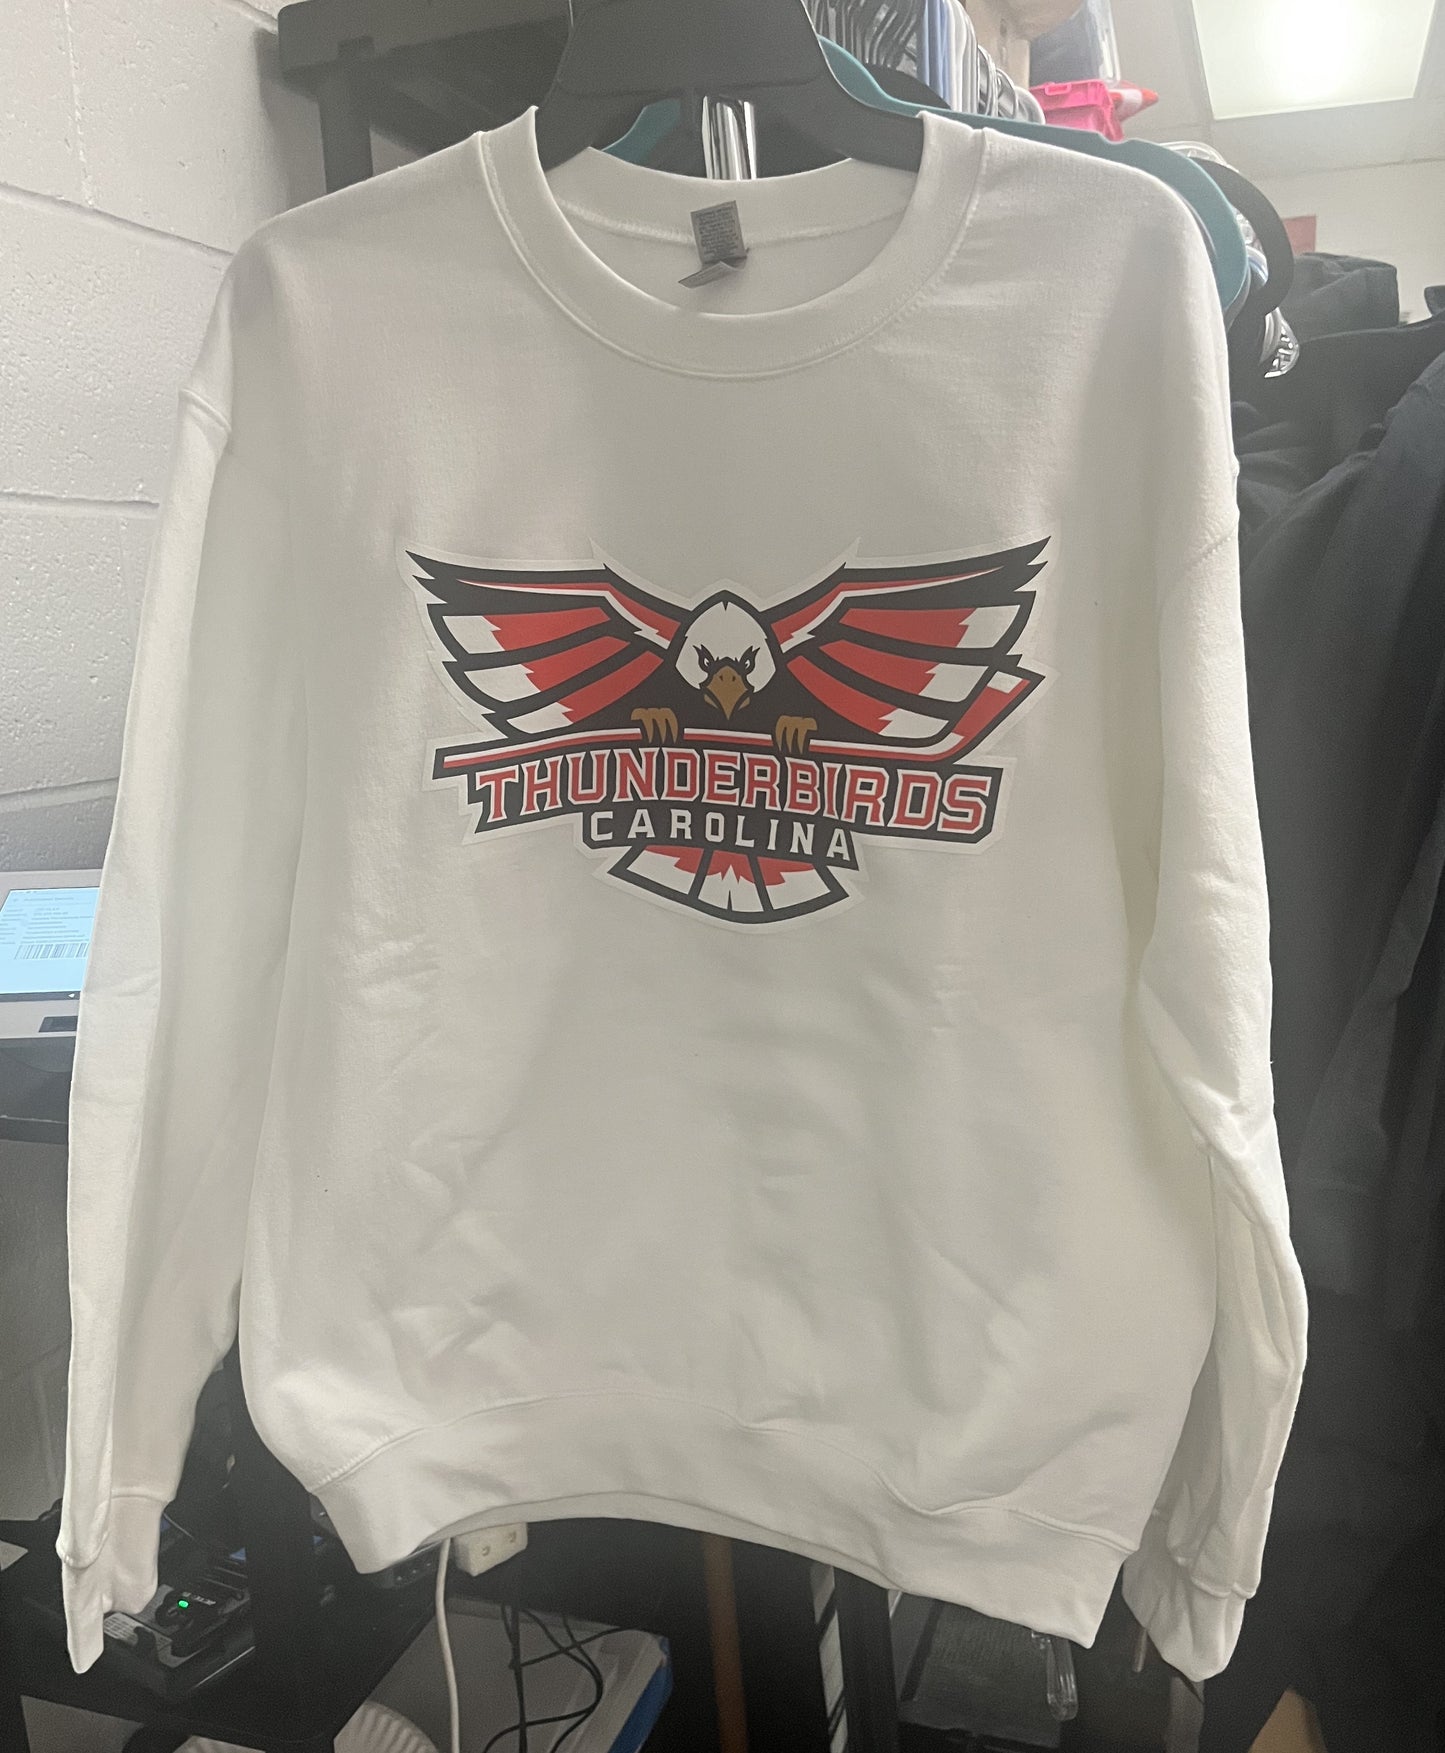 White Crew neck sweatshirt w/ Thunderbirds logo - X-Large